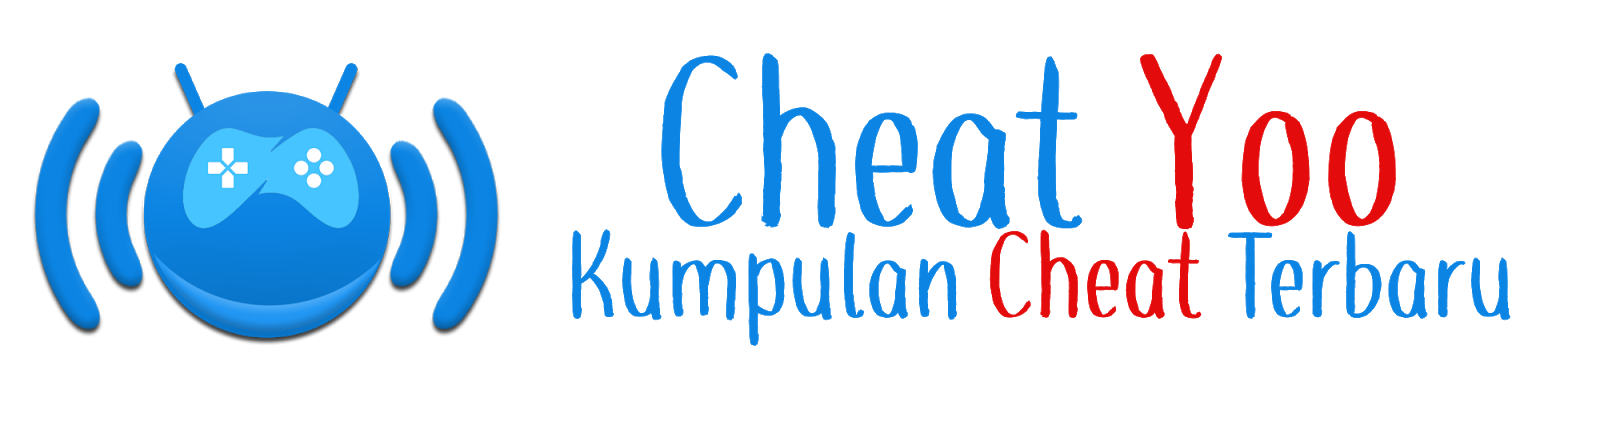 Cheat Yoo | Kumpulan Cheat Terbaru